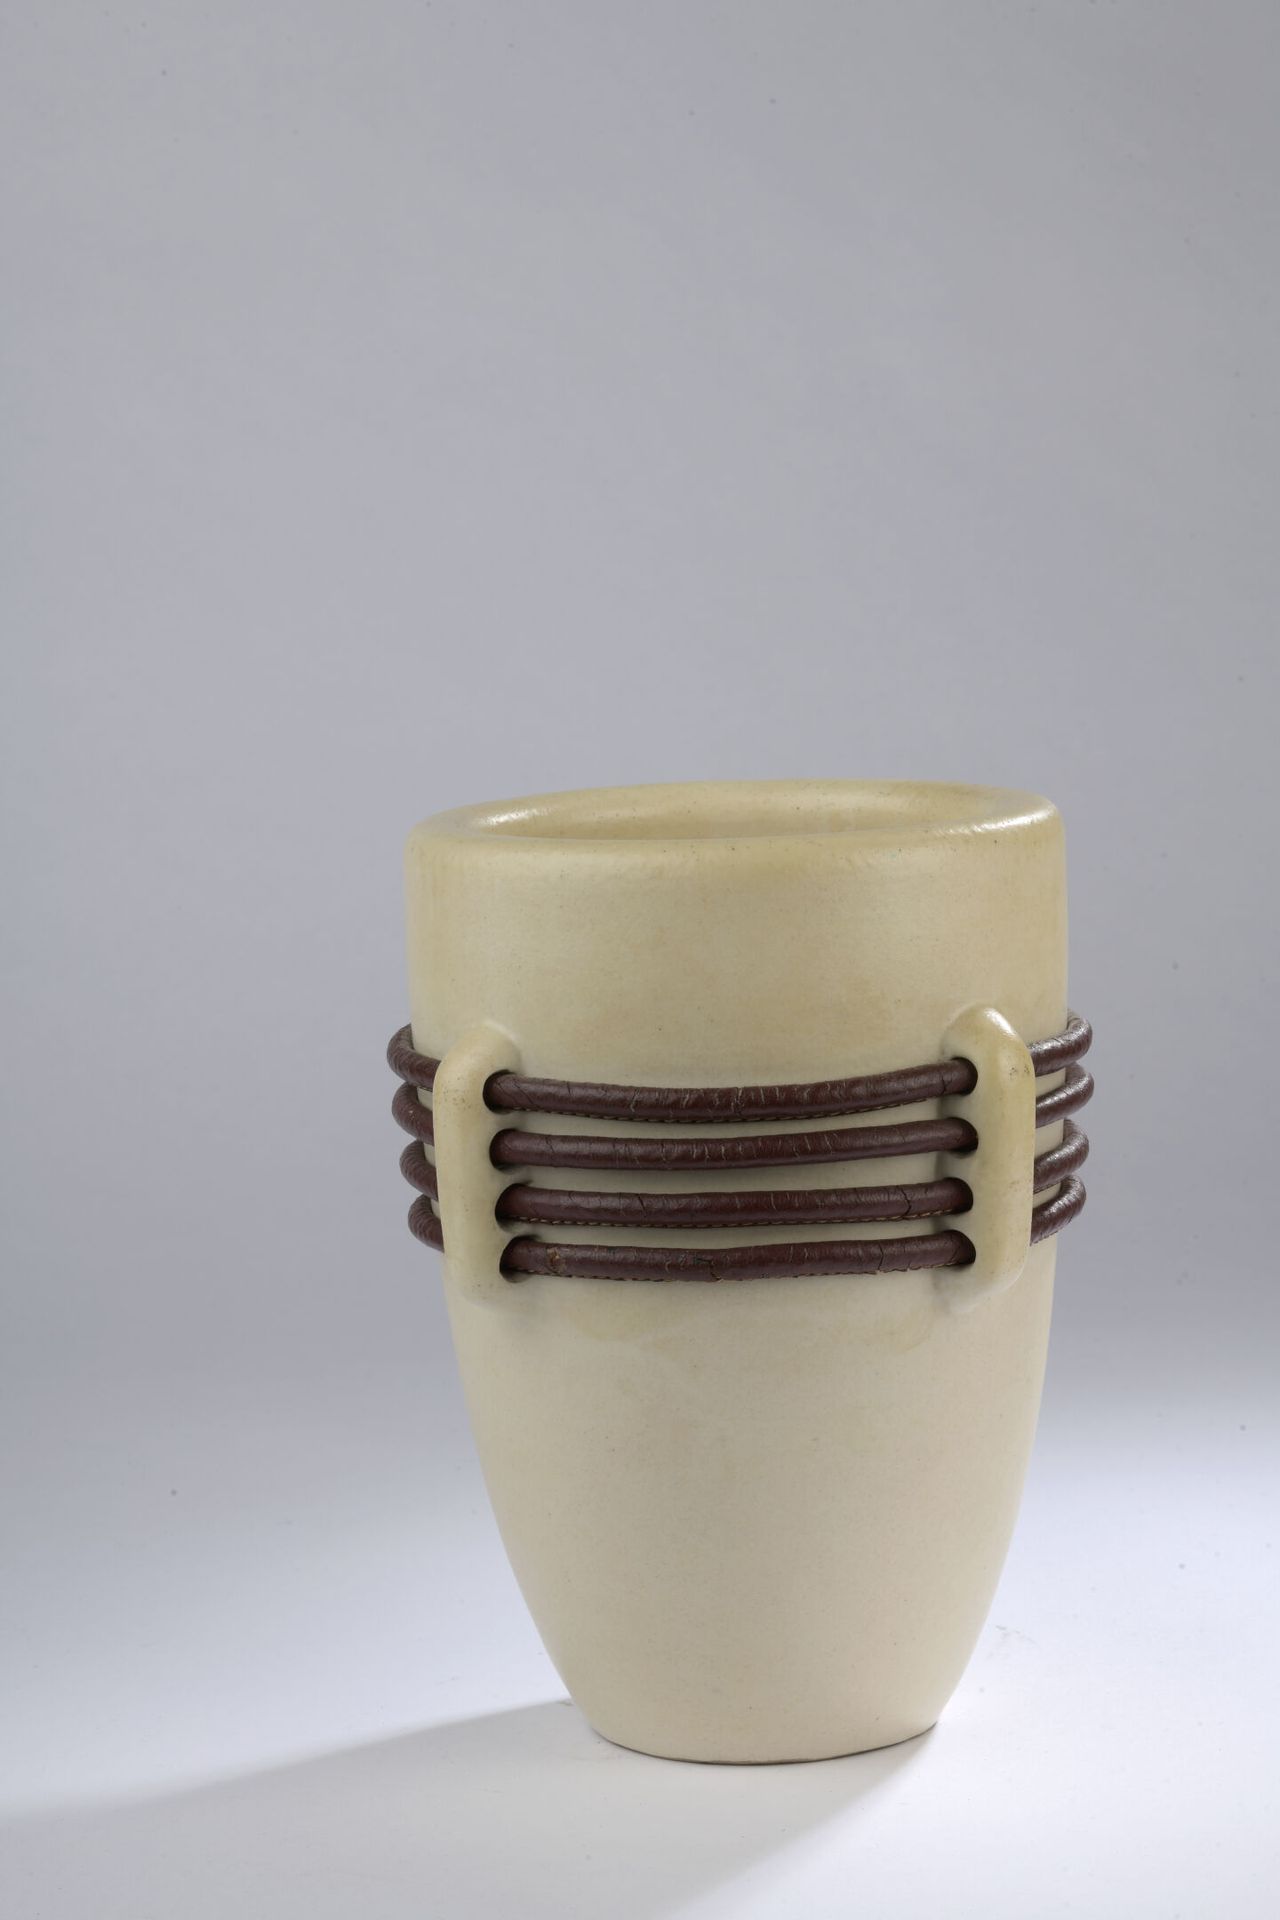 Null keramos-sevres。

约1950年。

重要的奶油色釉面陶瓷花瓶，有四个把手。手柄上有四次镂空，使重要的皮革链接得以通过。

签名。

H&hellip;